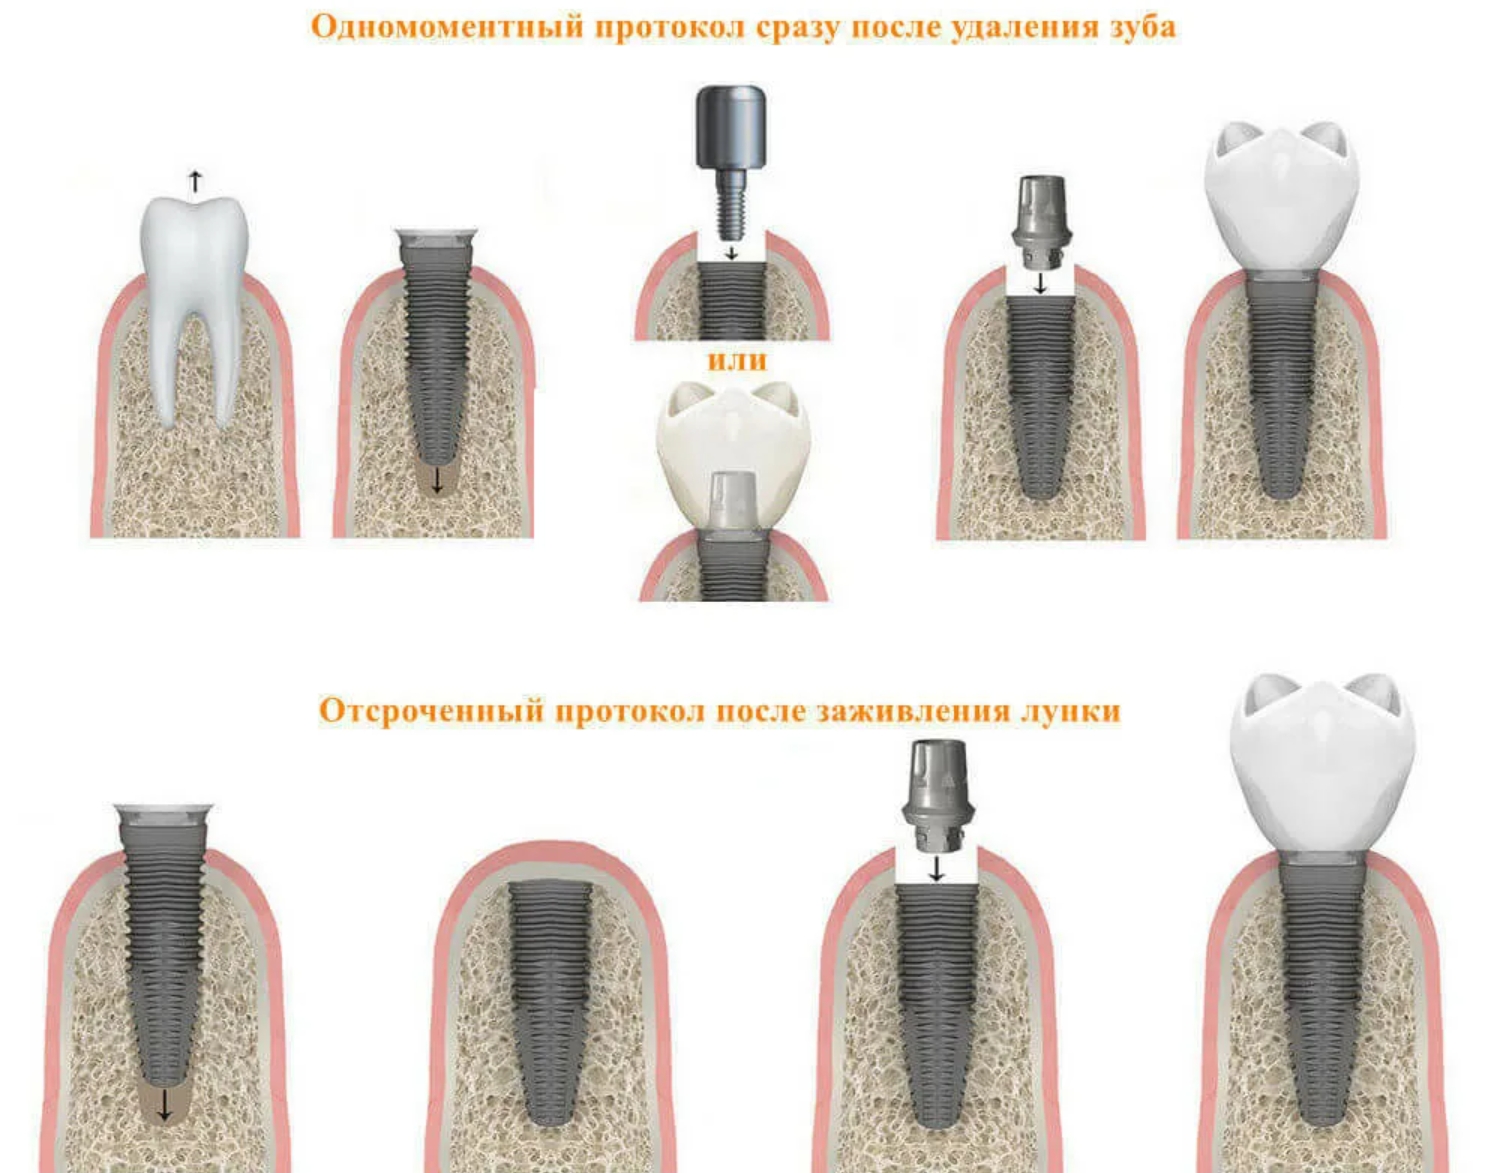 Зуб после душа. Имплант абатмент Десна коронка. Одномоментная имплантация двухэтапная. Одноэтапная методика имплантации.